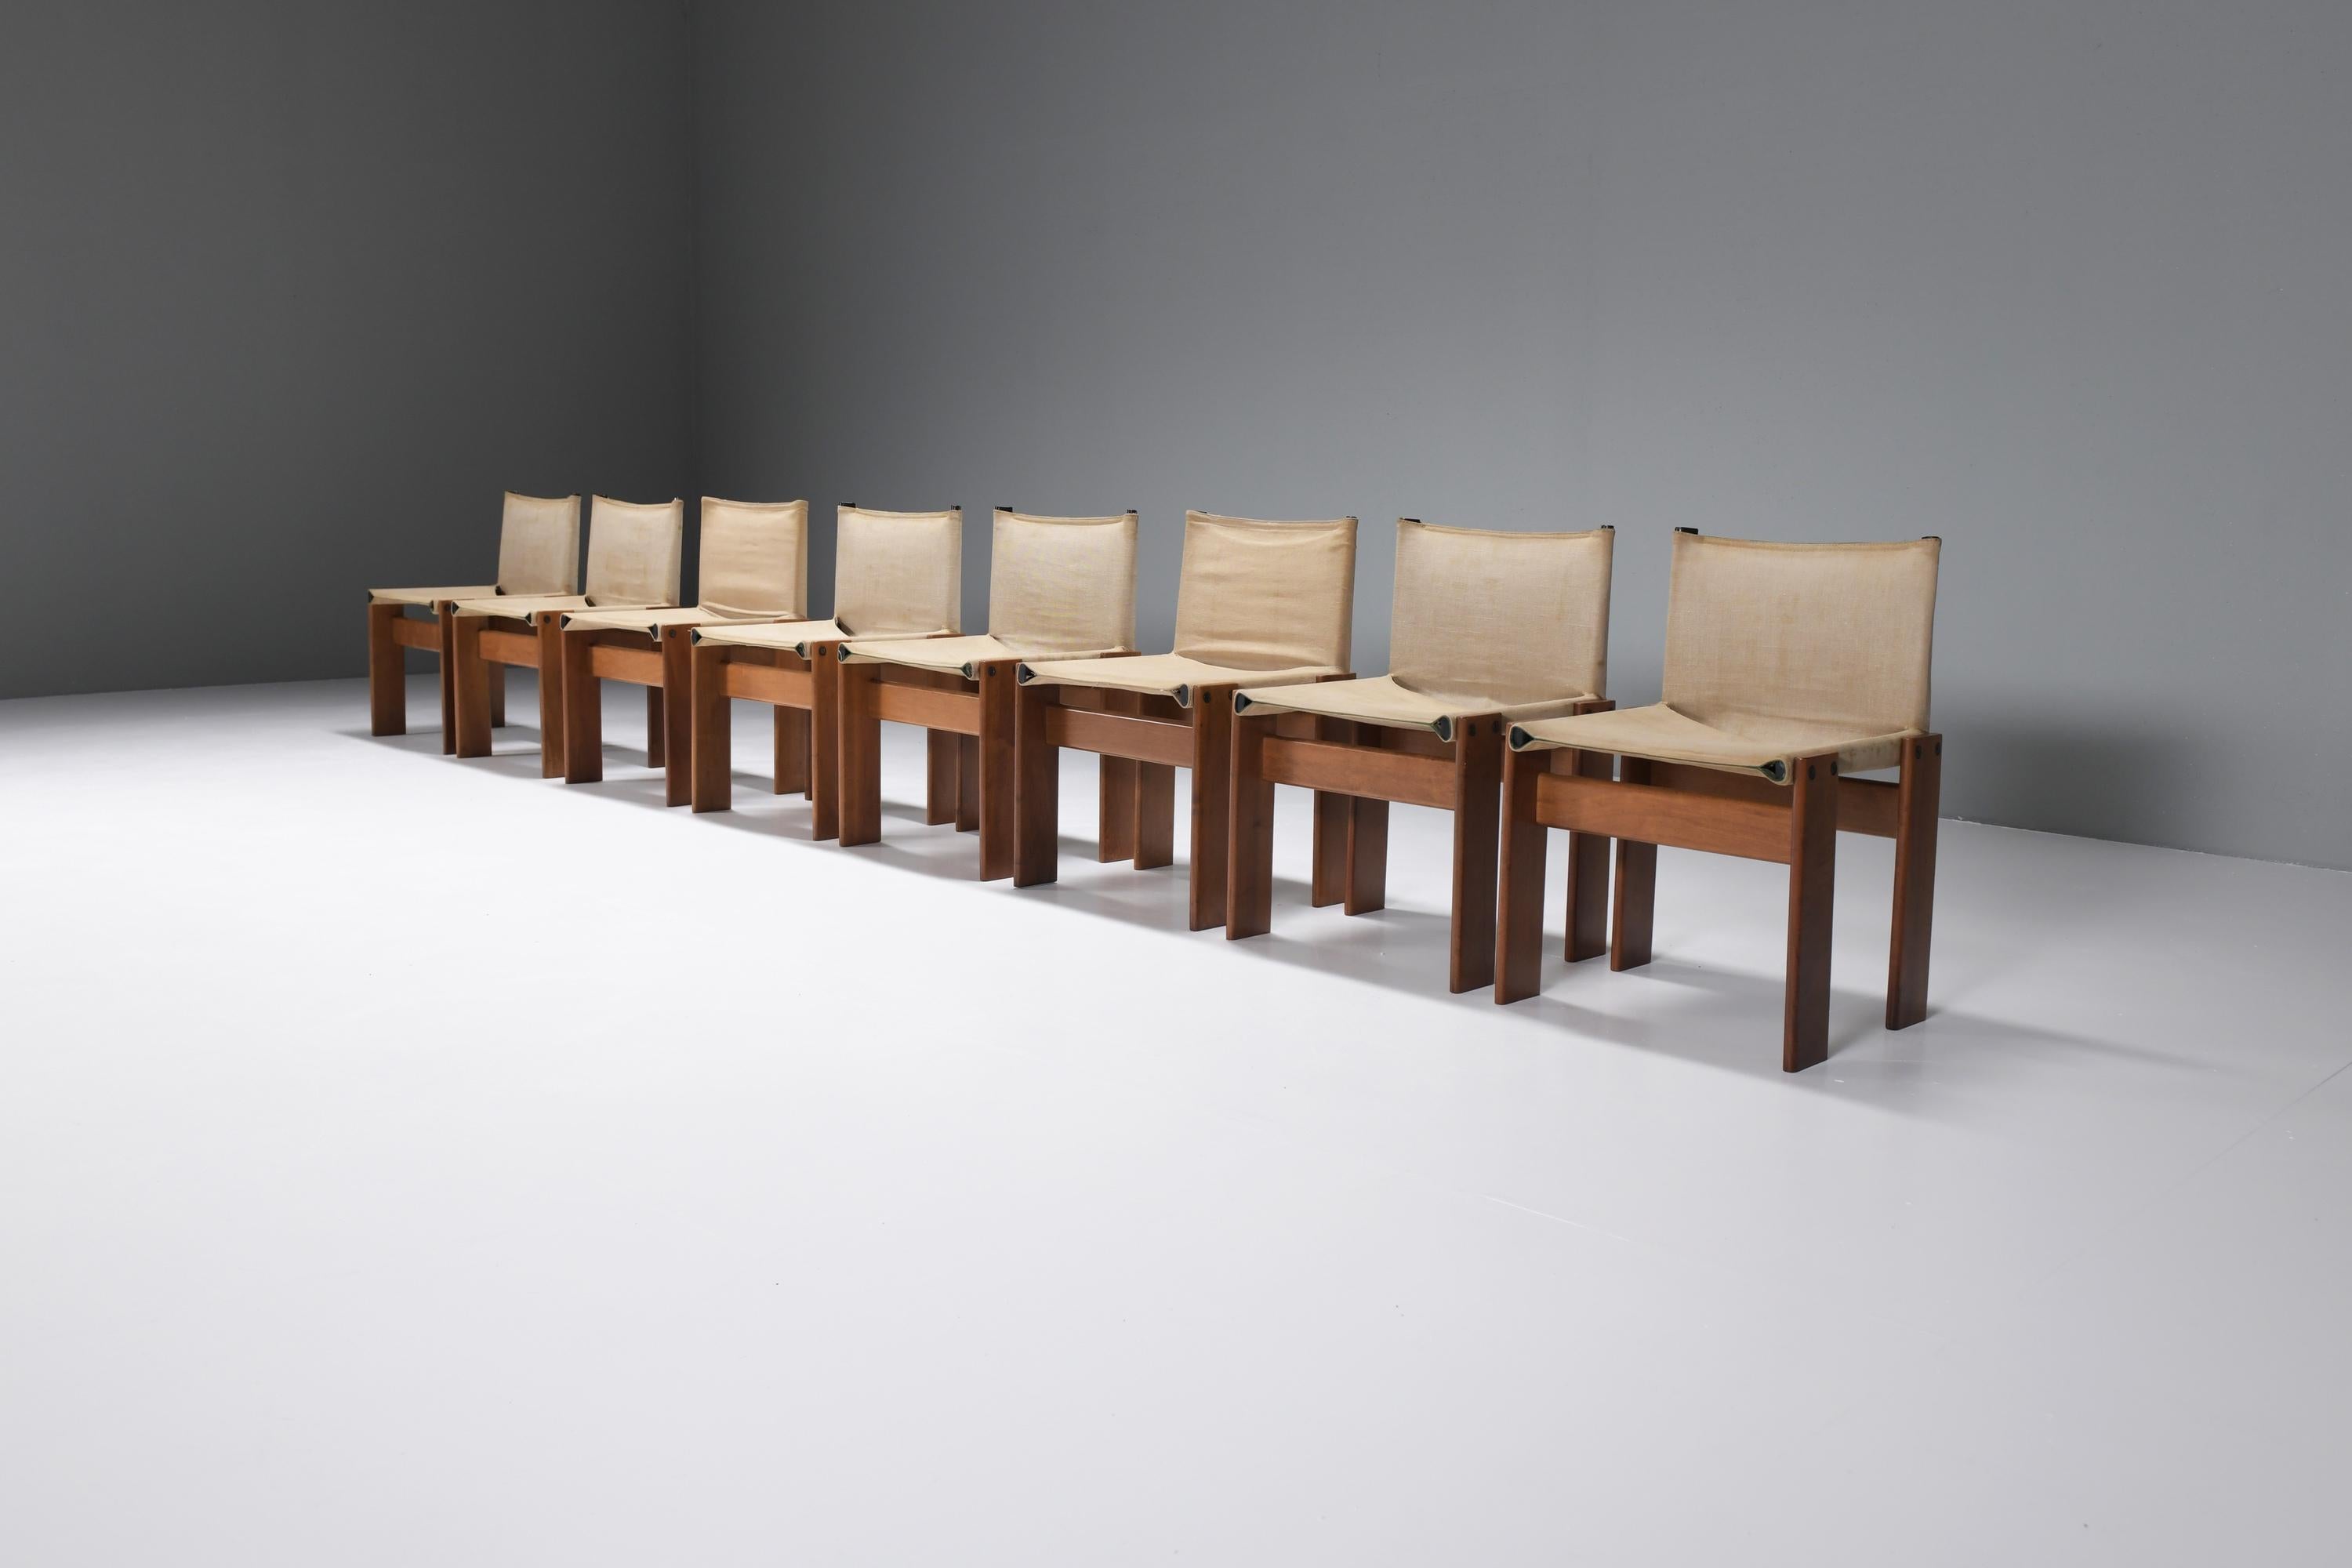 Ensemble assorti de 8 chaises de salle à manger Monk avec une combinaison frappante de la toile originale et du noyer aux tons chauds.  
Conçu par Afra & Tobia Scarpa pour Molteni Italie, 1974.

La particularité de ce modèle réside dans la structure